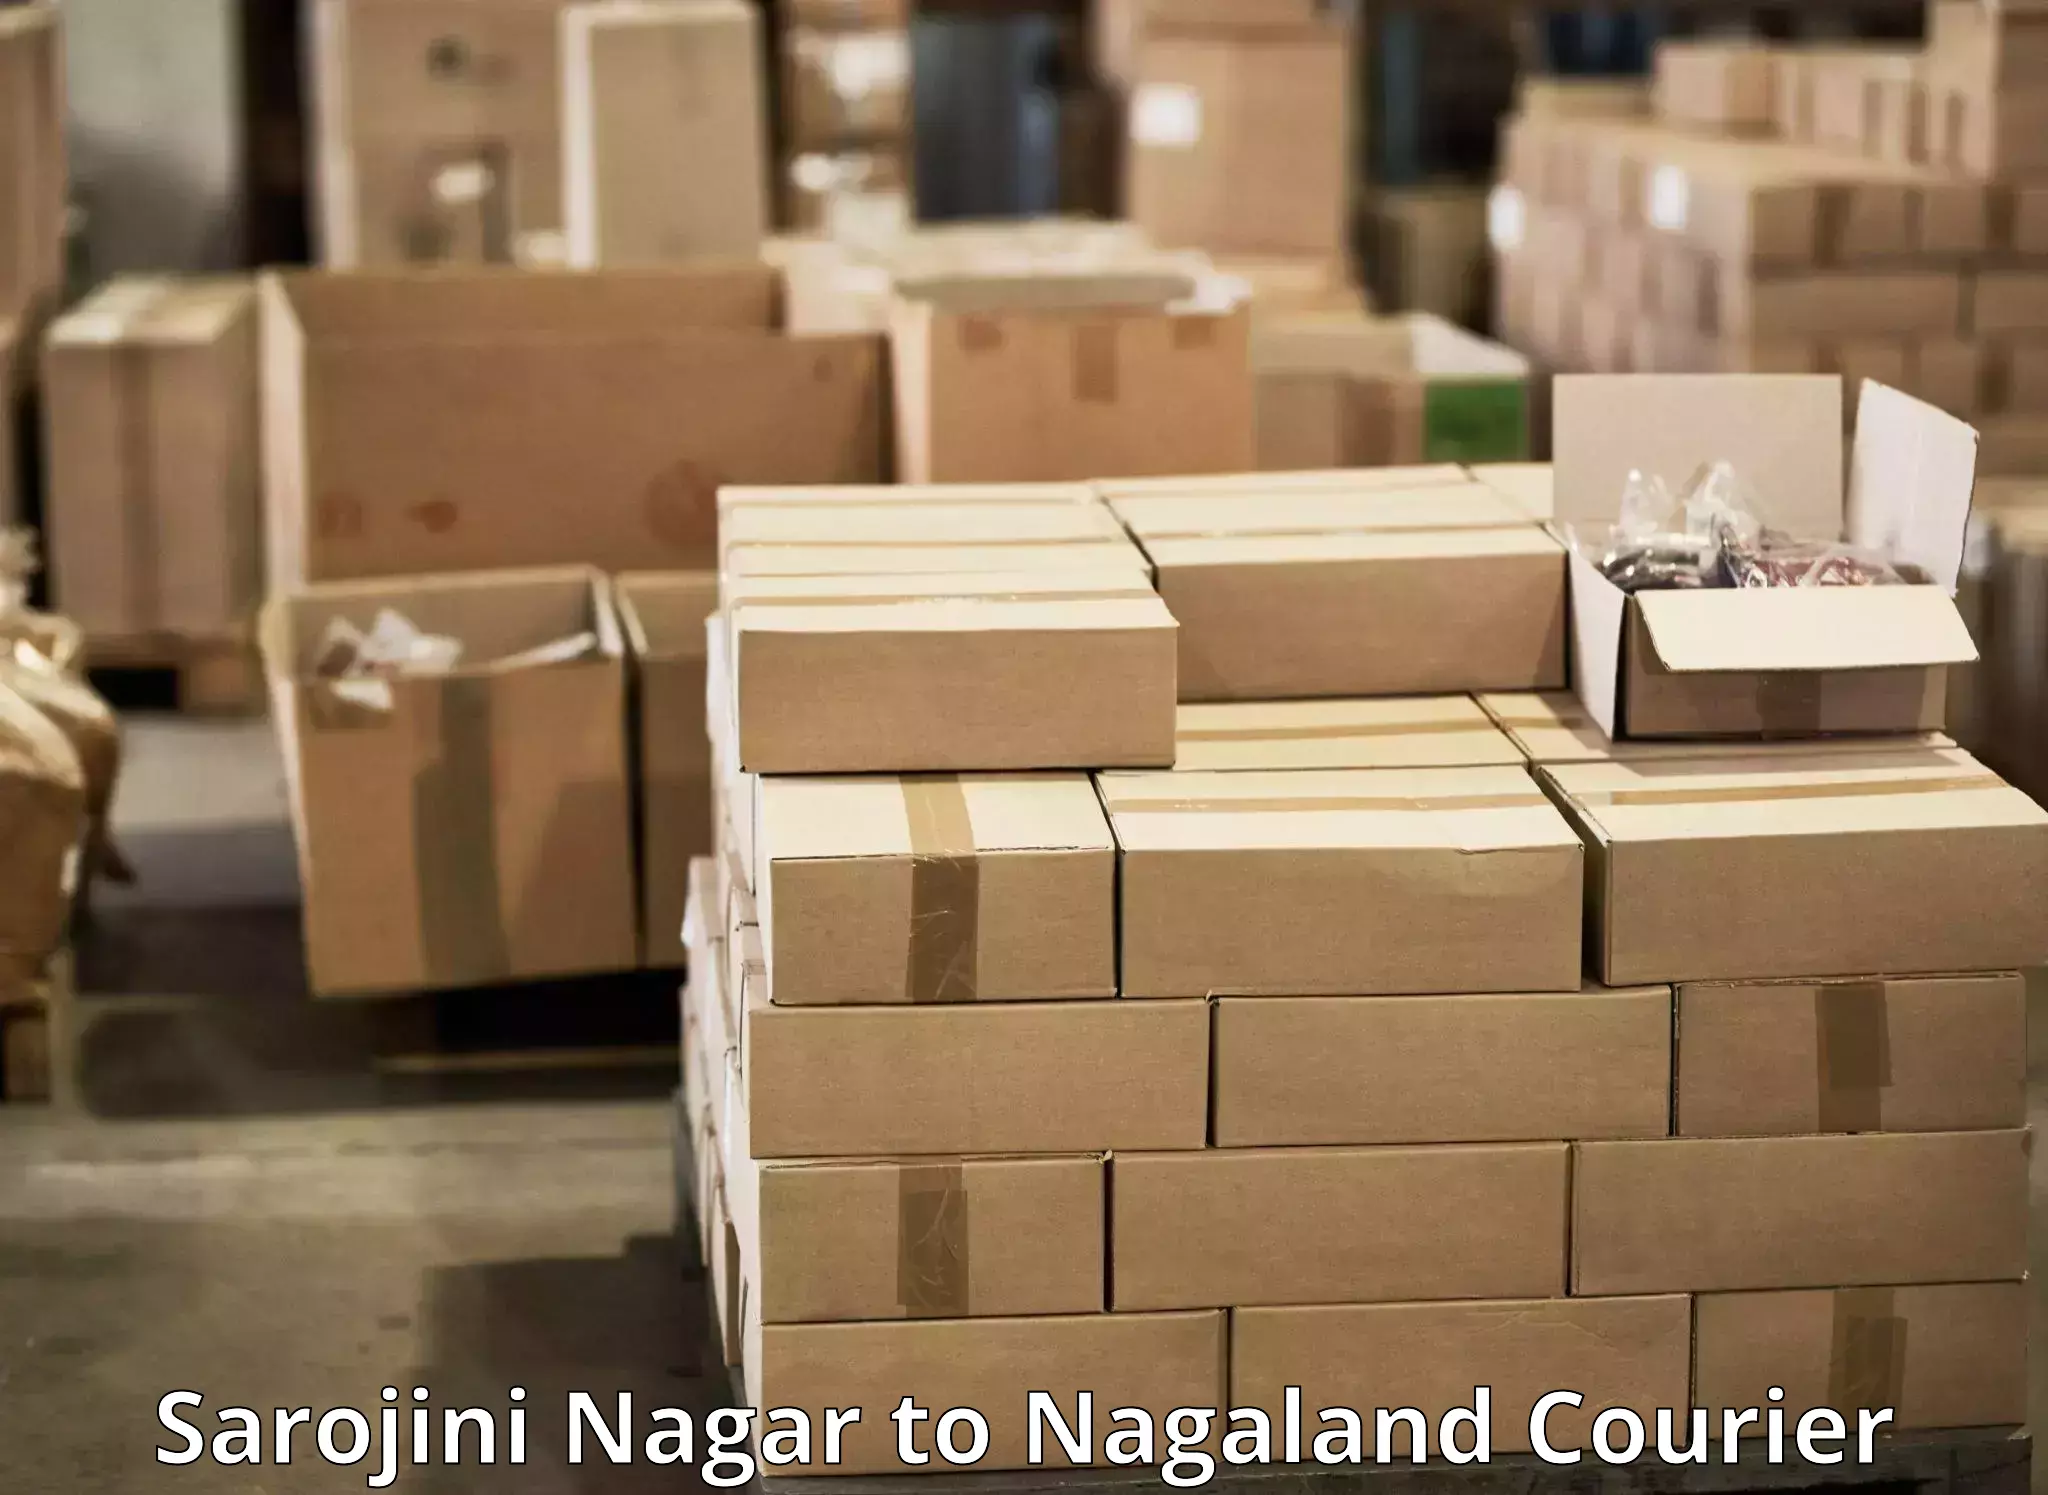 Digital courier platforms Sarojini Nagar to Longleng